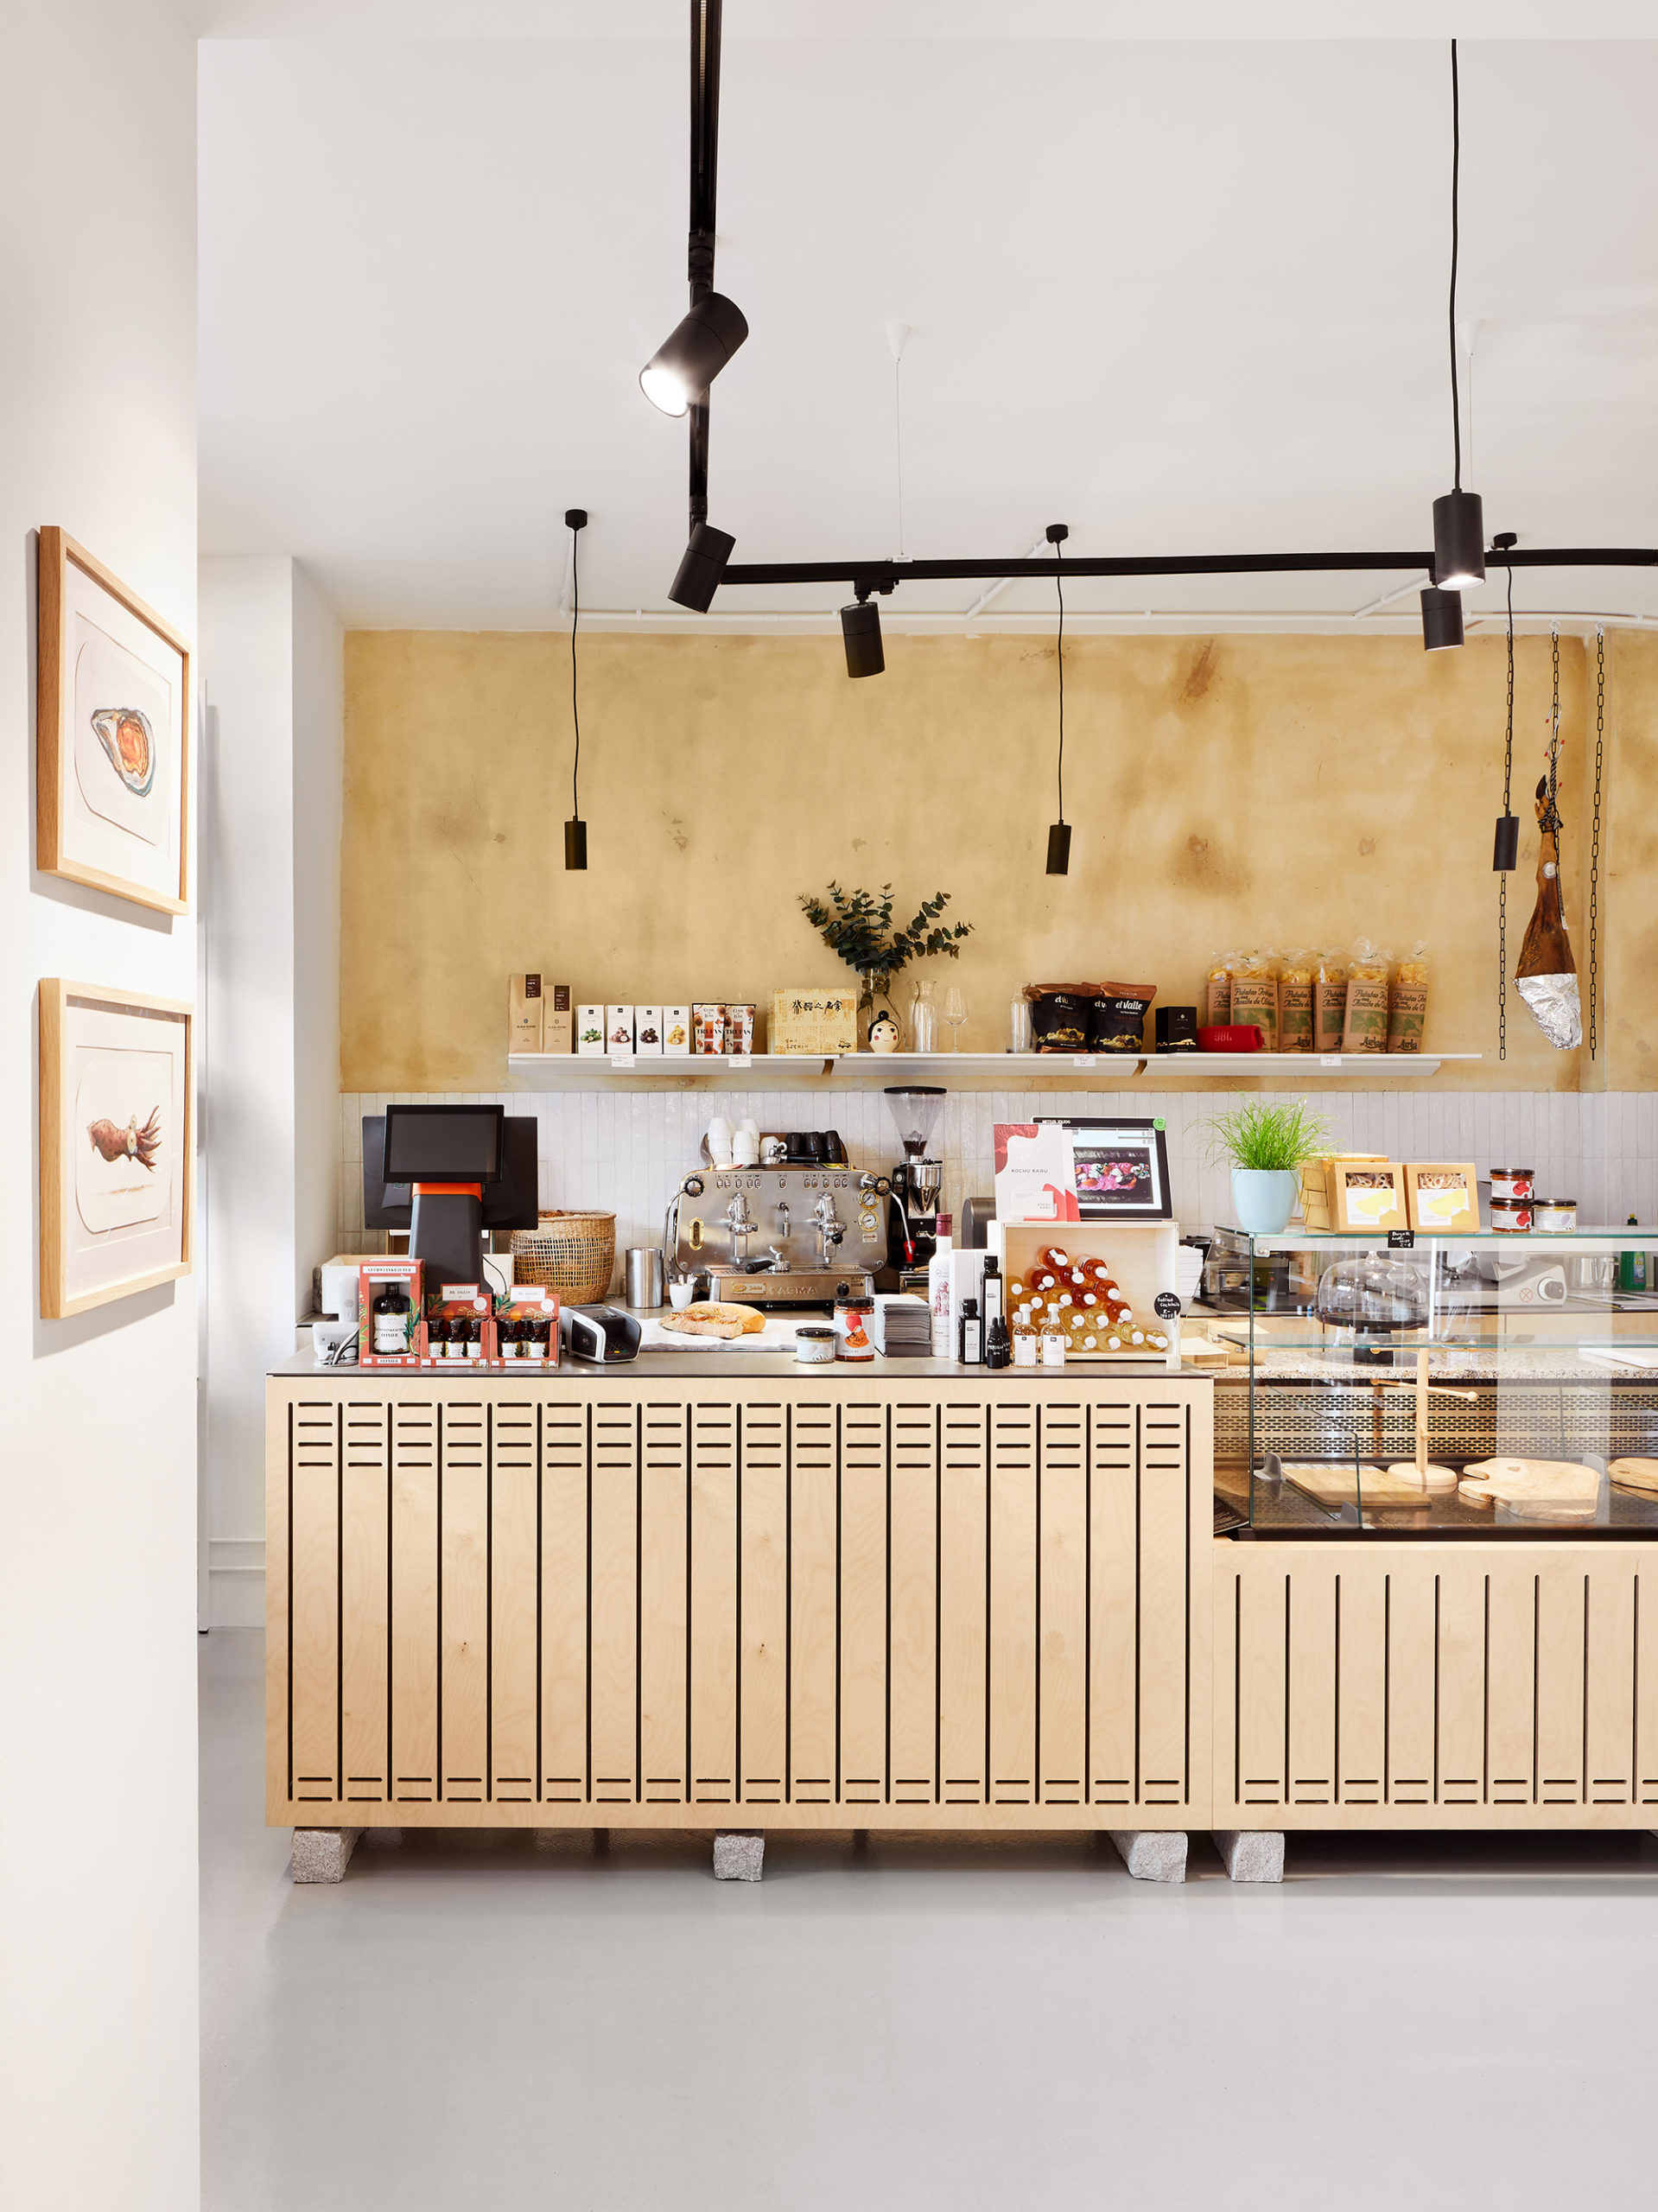 Kochu Karu Deli Ladenansicht innen, Blick auf Theke aus hellem Holz, Kasse, Kaffeemaschine und Produkte